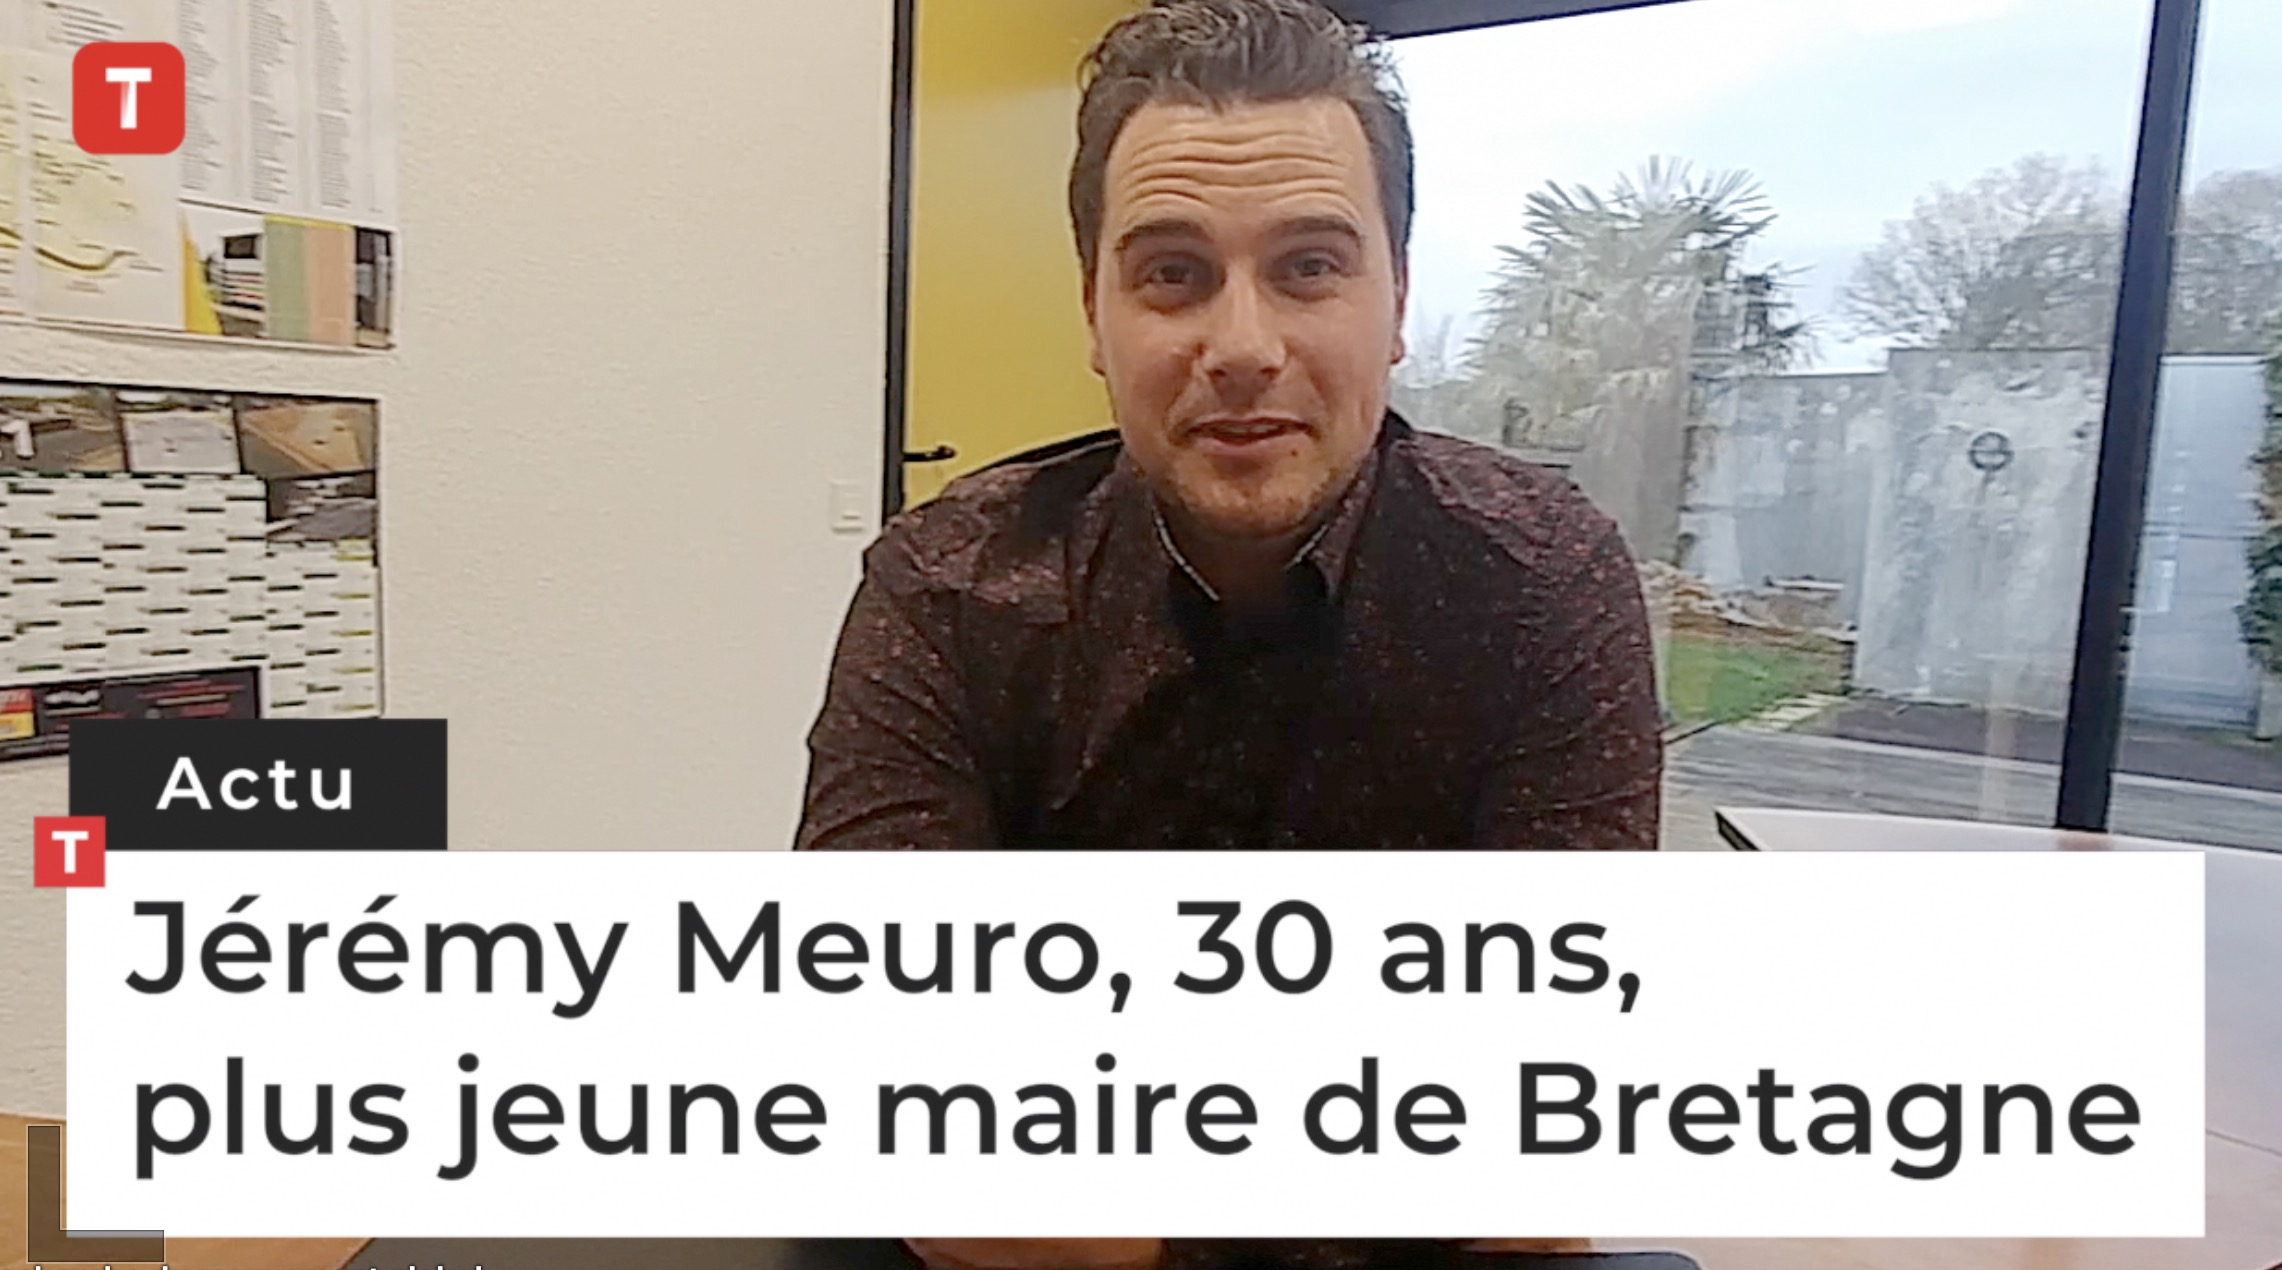 Jérémy Meuro, 30 ans, plus jeune maire de Bretagne (Le Télégramme)